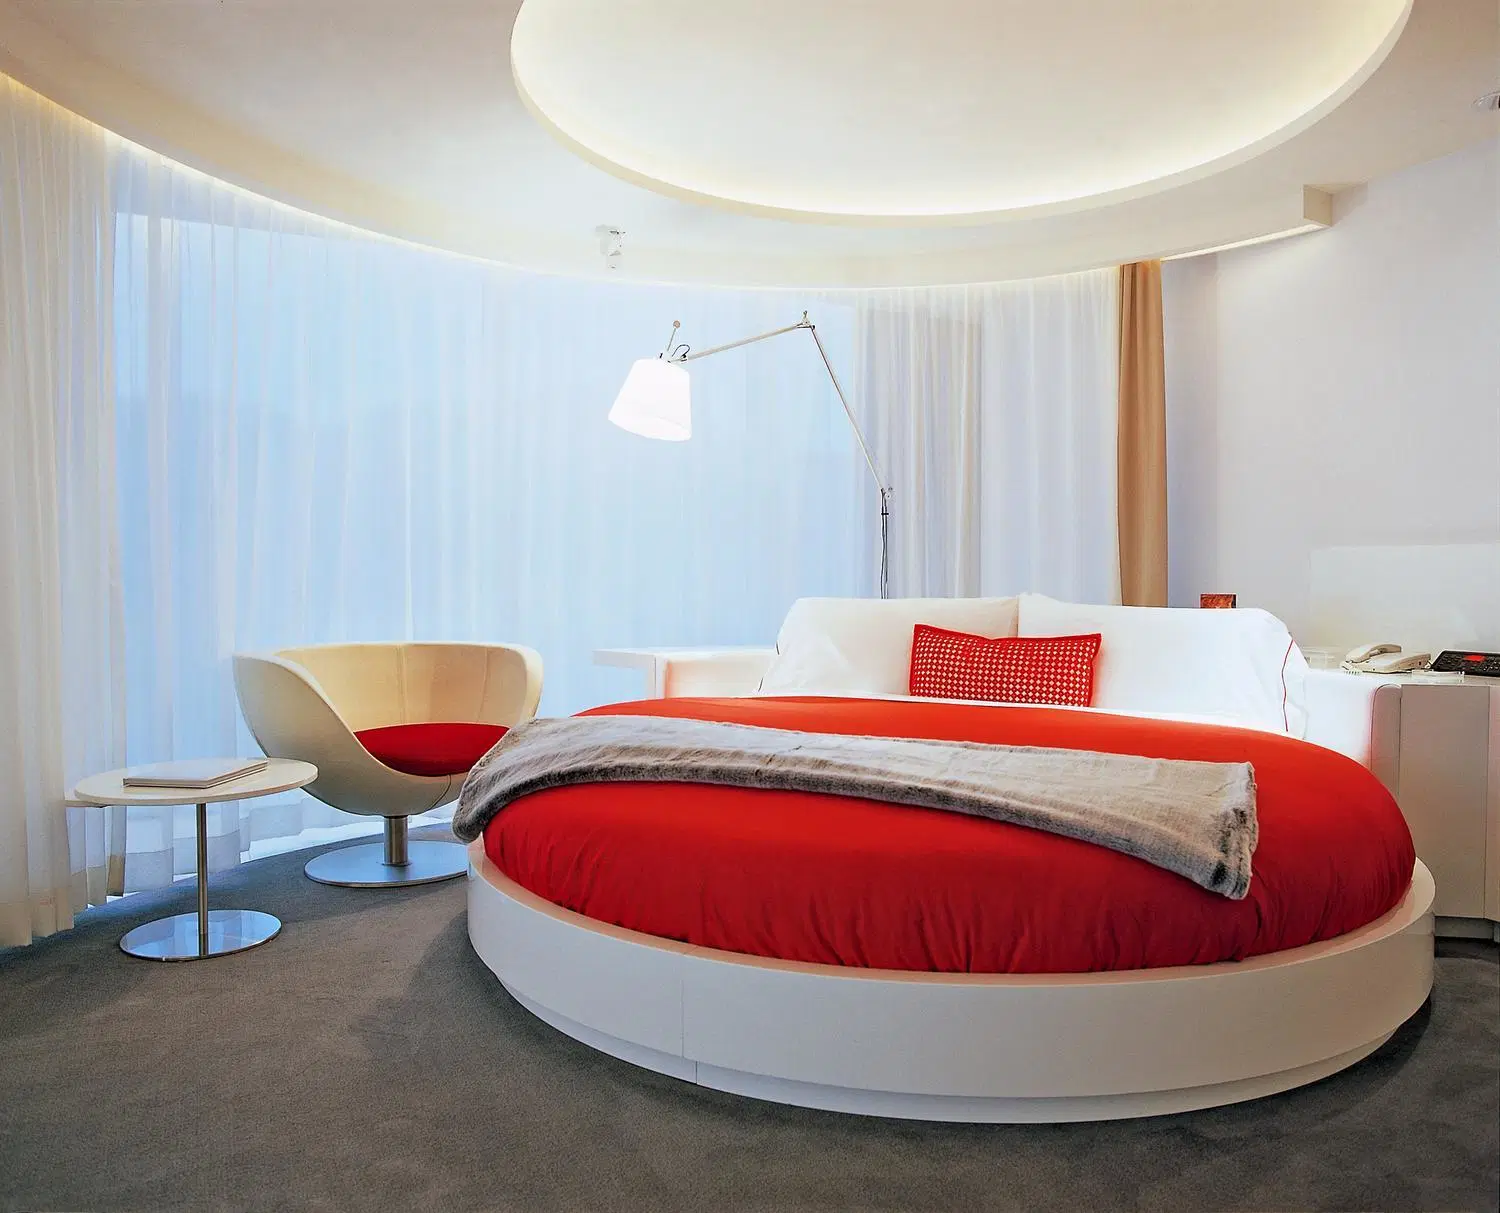 Chambre d'hôtel entièrement personnalisable avec suite, lit queen size et mobilier sur mesure.